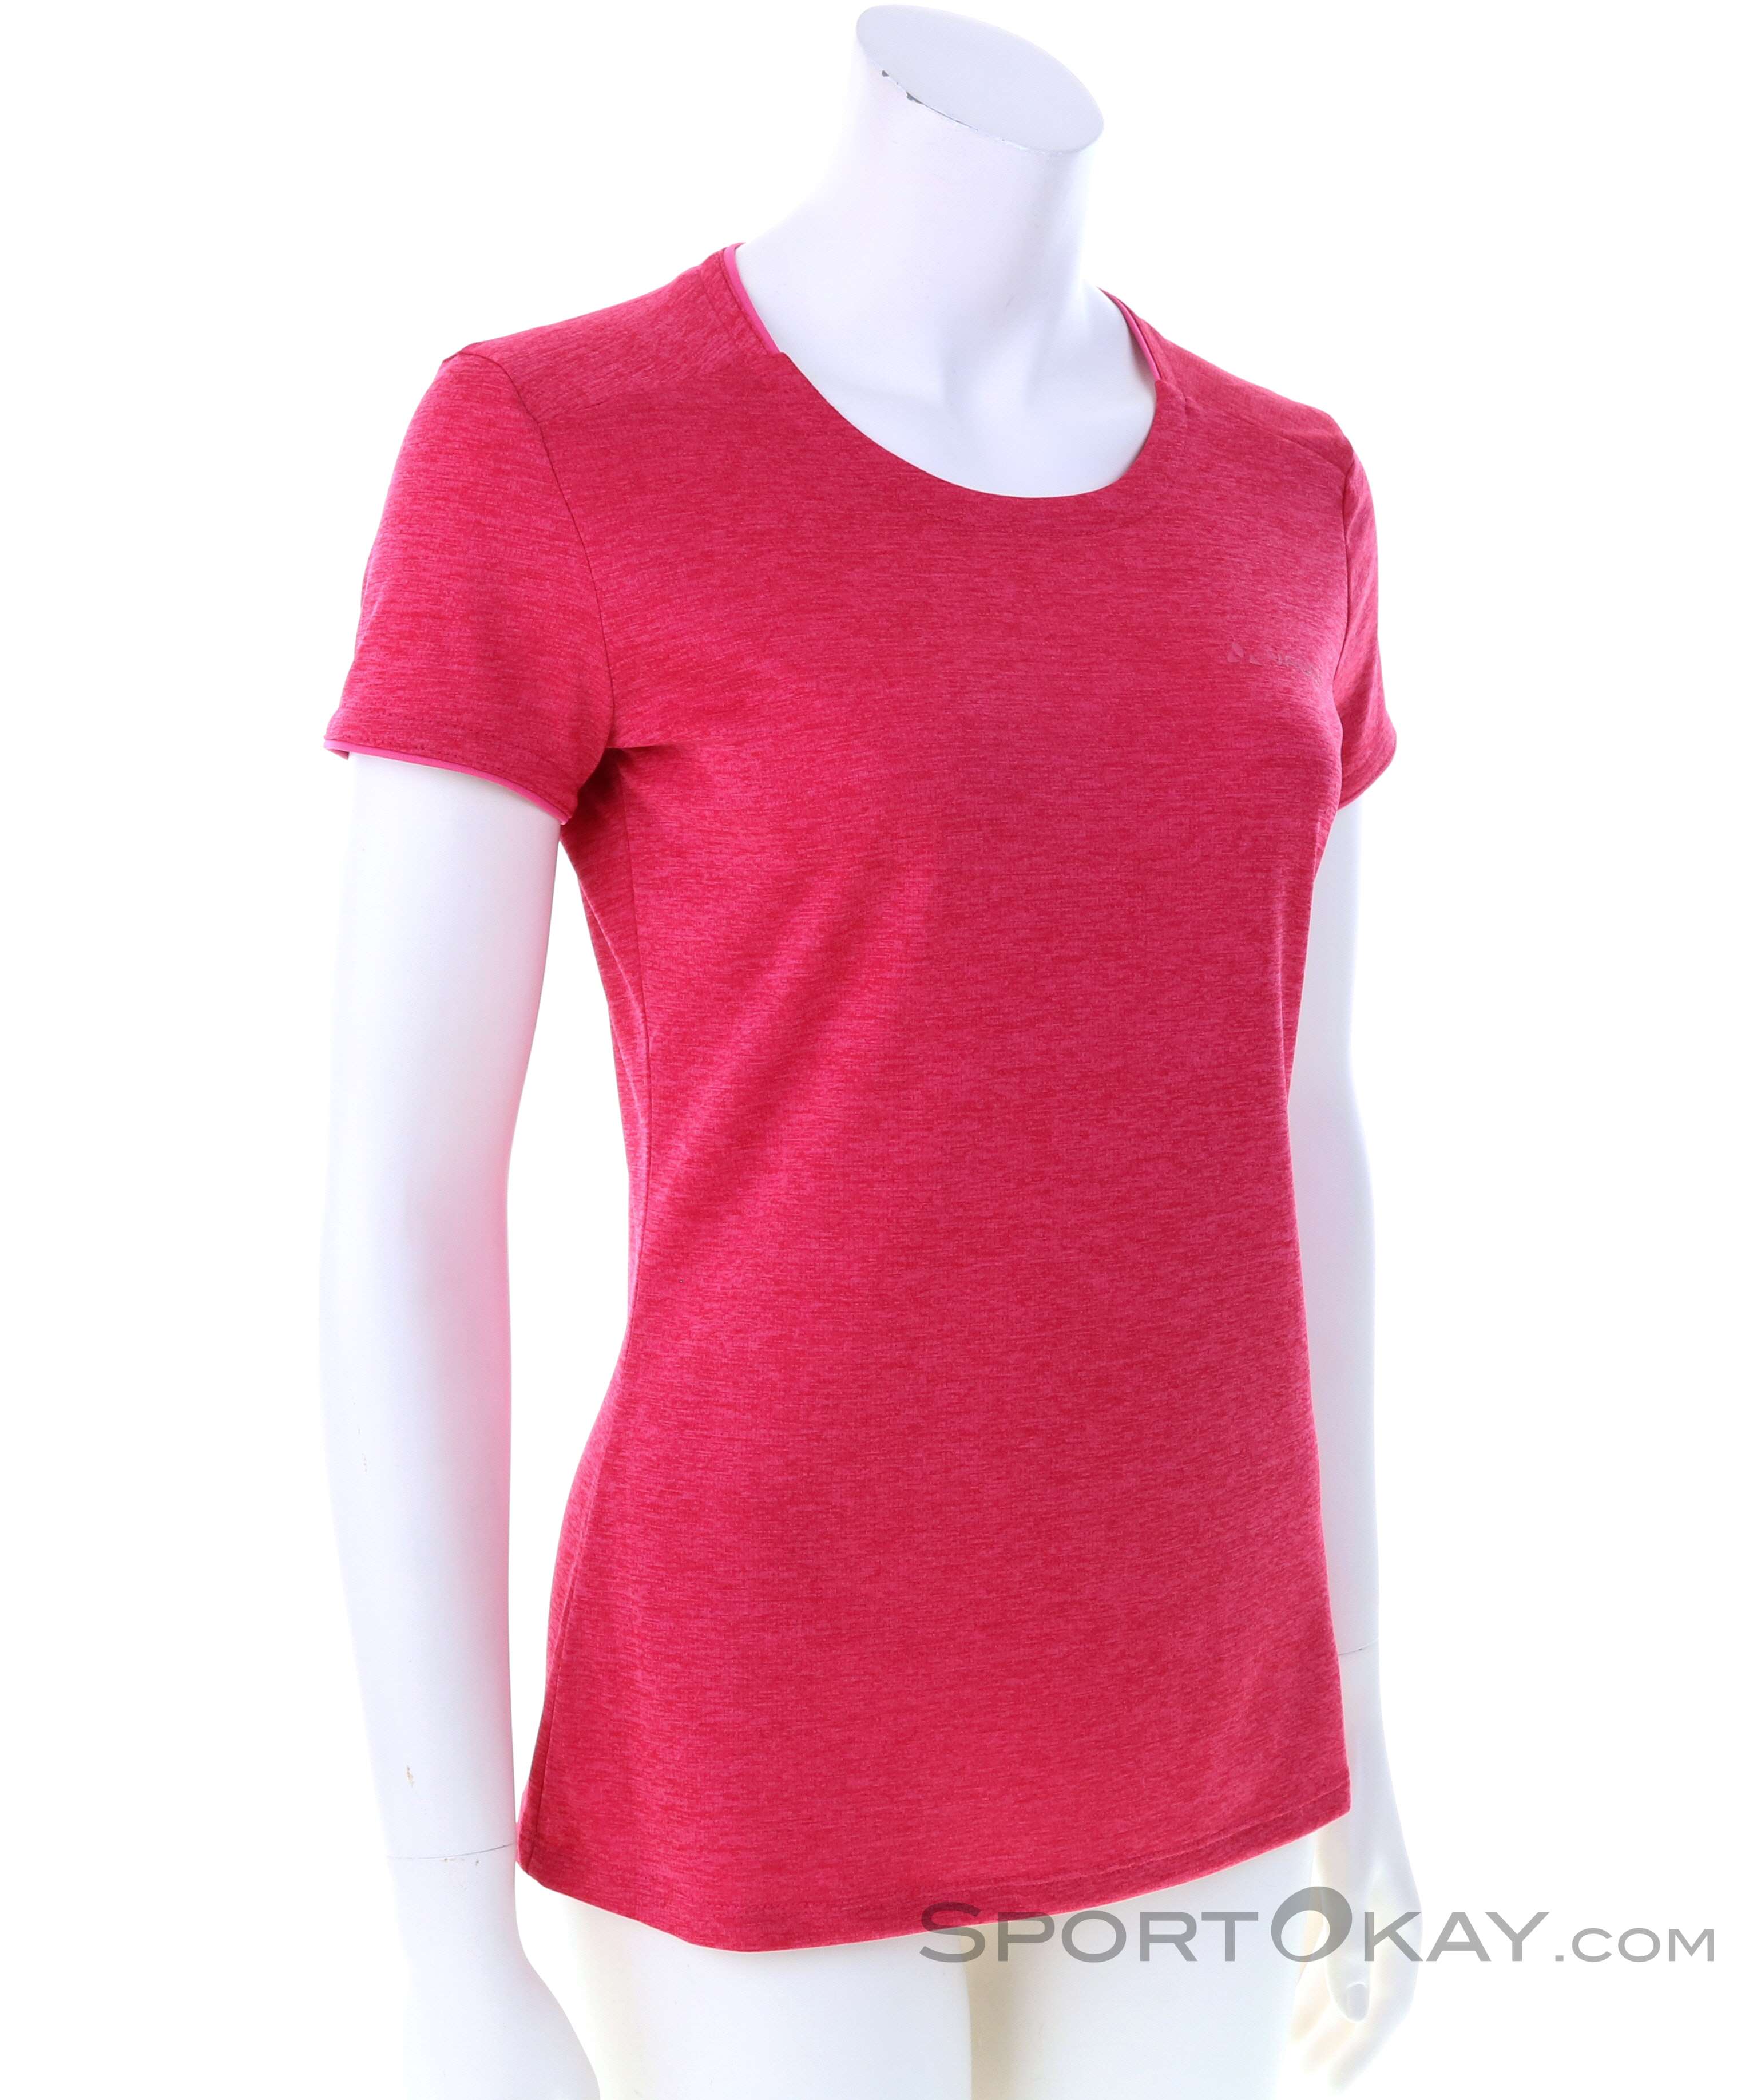 - - Vaude T-Shirt Hemden & Outdoor Essential Outdoorbekleidung Damas - - Shirts Alle